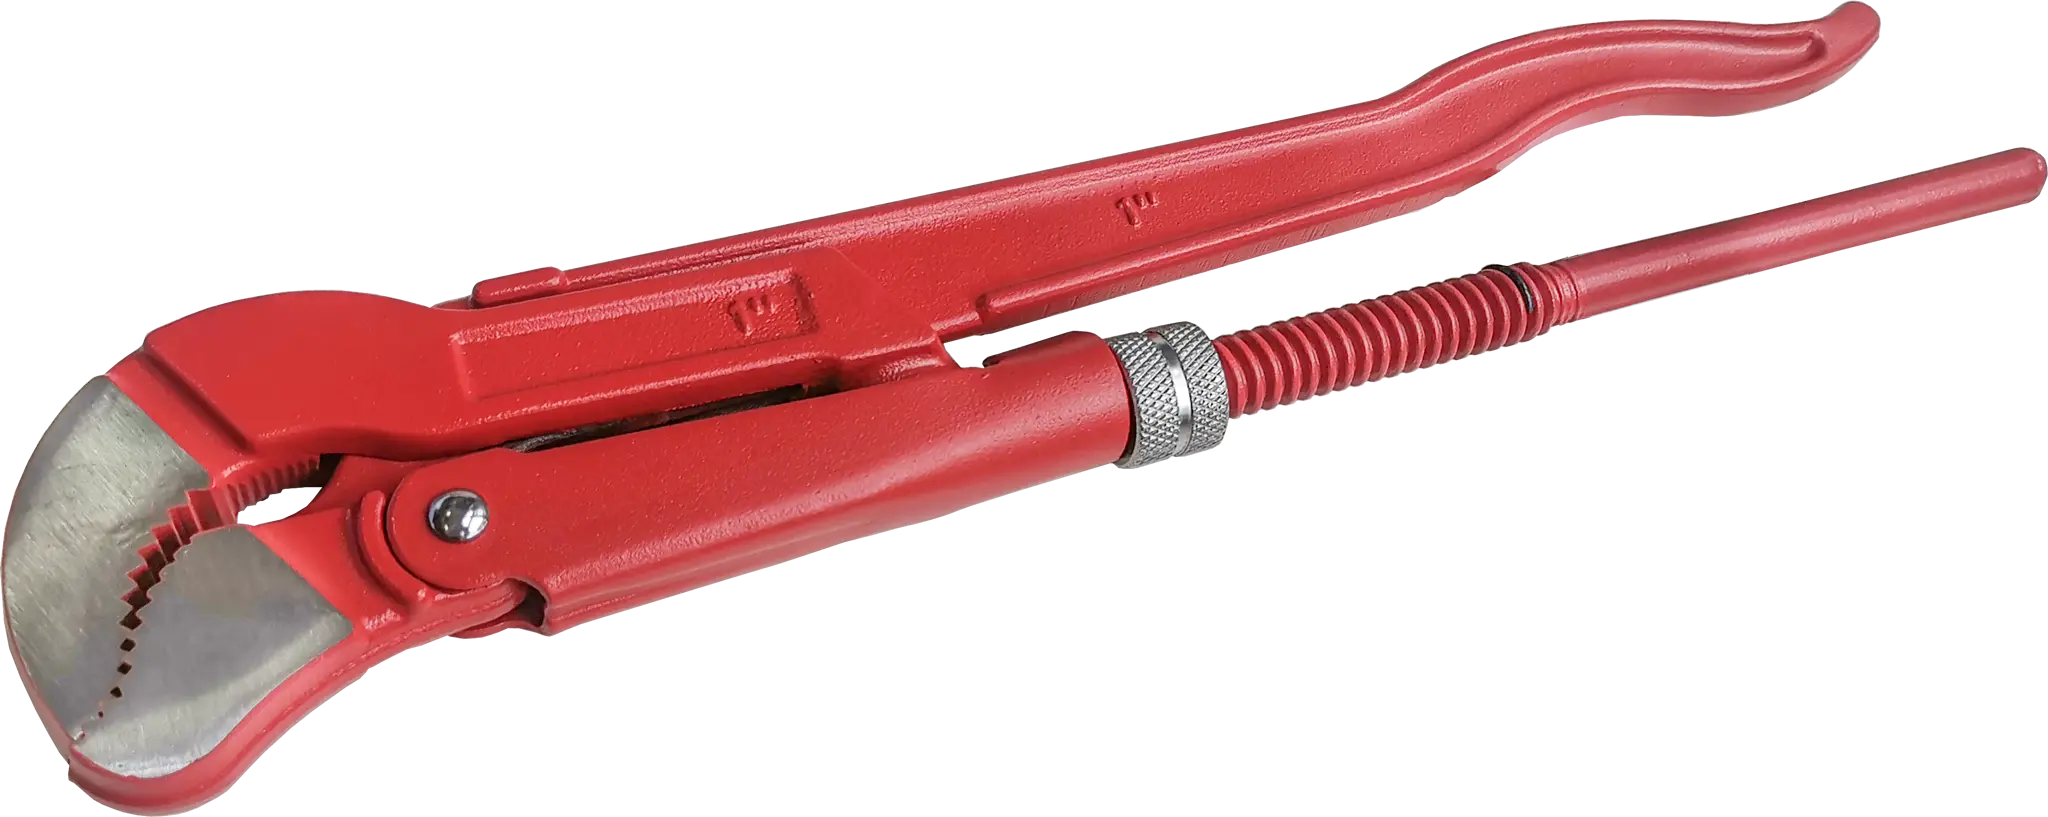 Ключ трубный газовый рычажный S 1045.0254 захват 25 мм, длина 320 мм трубный глухой метчик русский инструмент